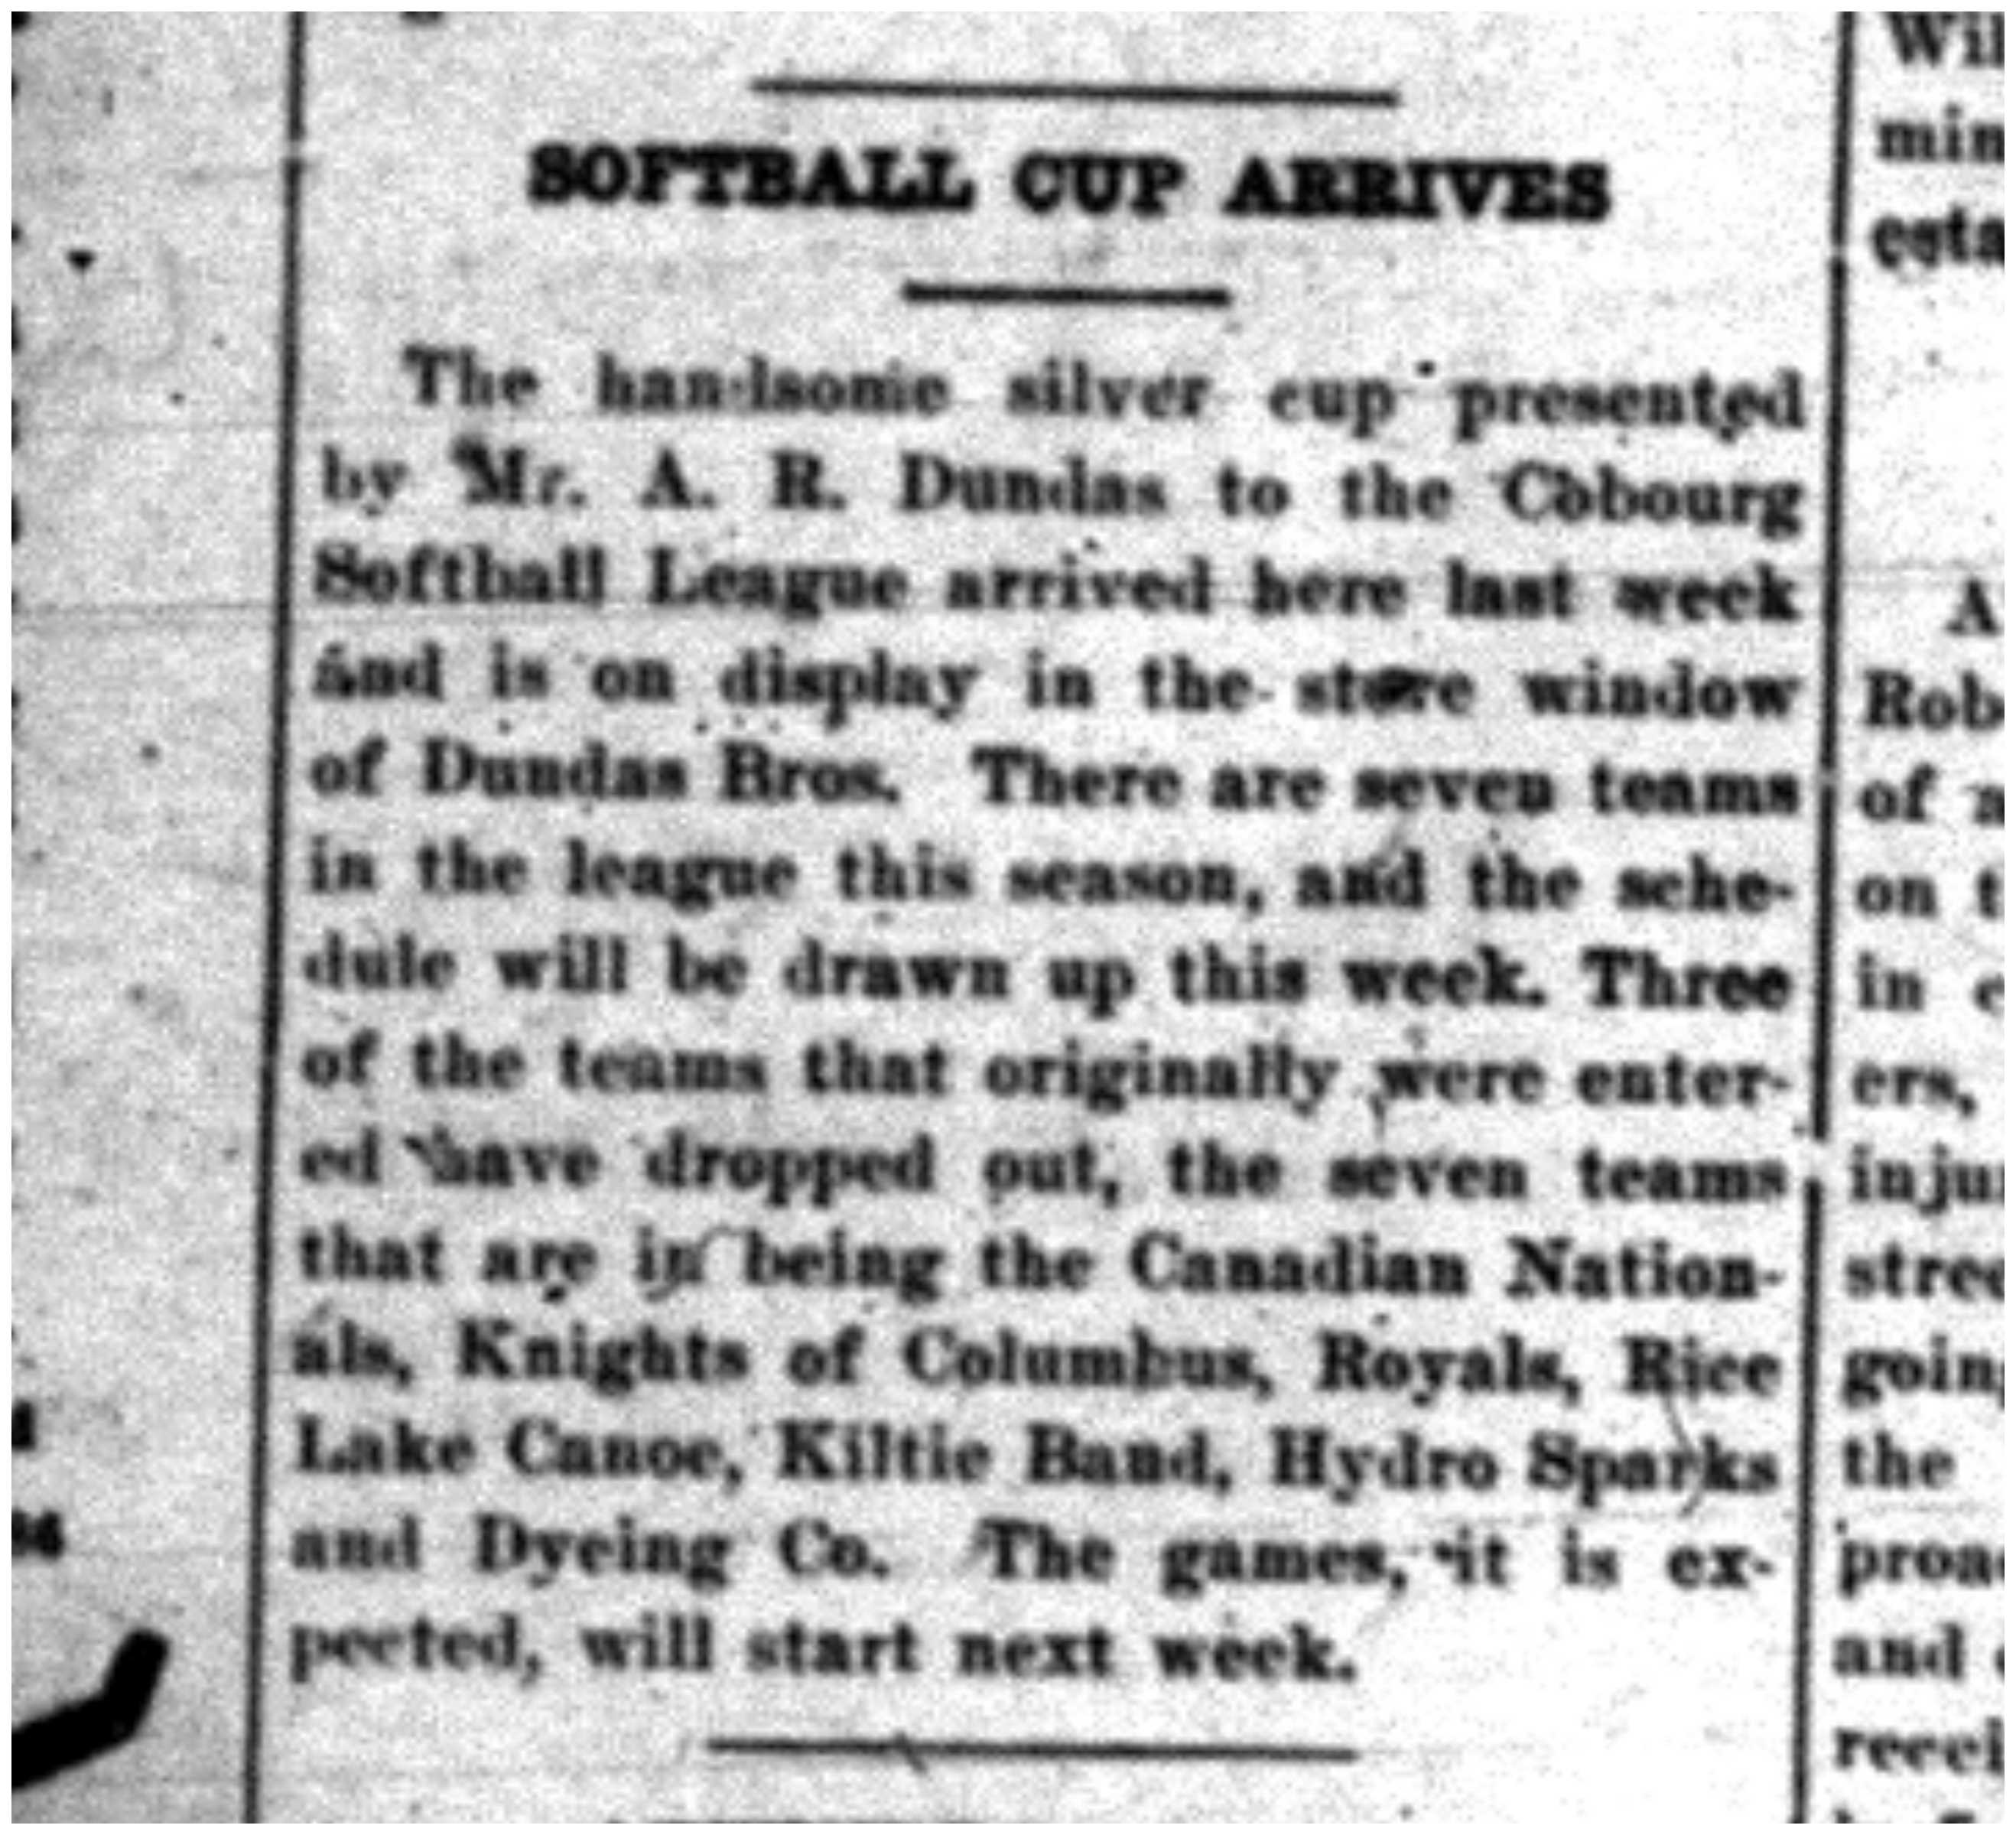 1925-05-26 Softball -League Cup